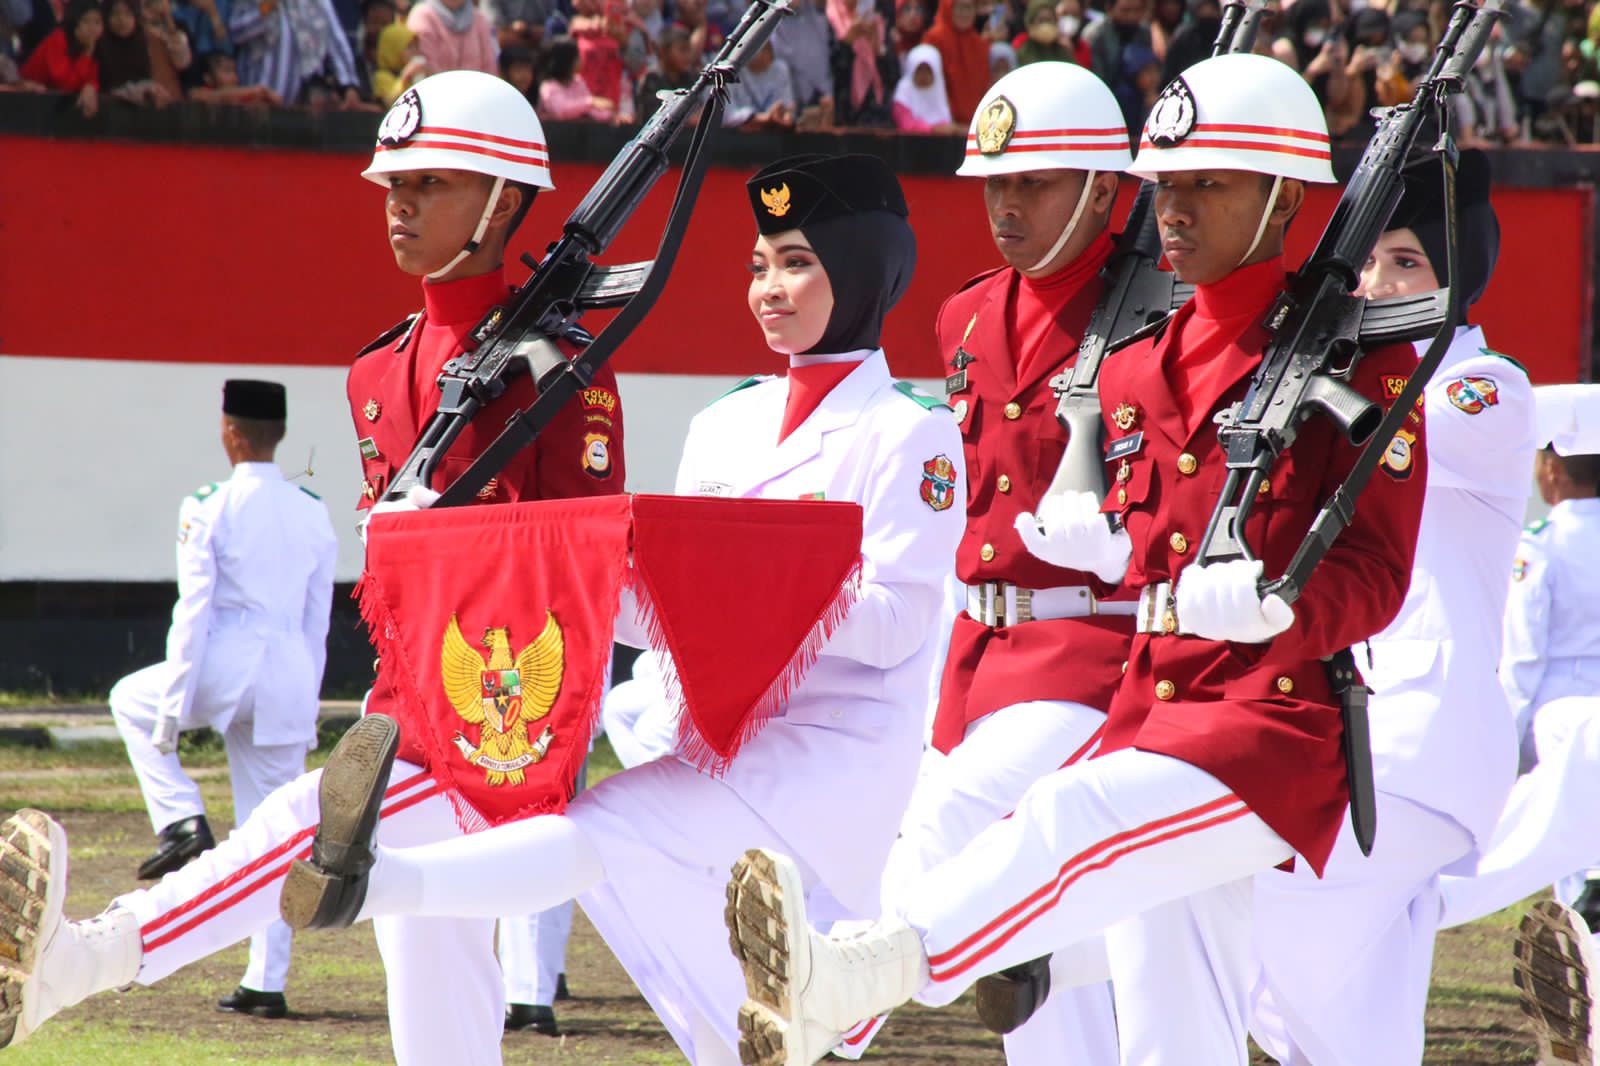 Jadi Inspektur Upacara, Bupati Wajo Ucapkan Selamat Memperingati Hari Kemerdekaan Indonesia Ke-77